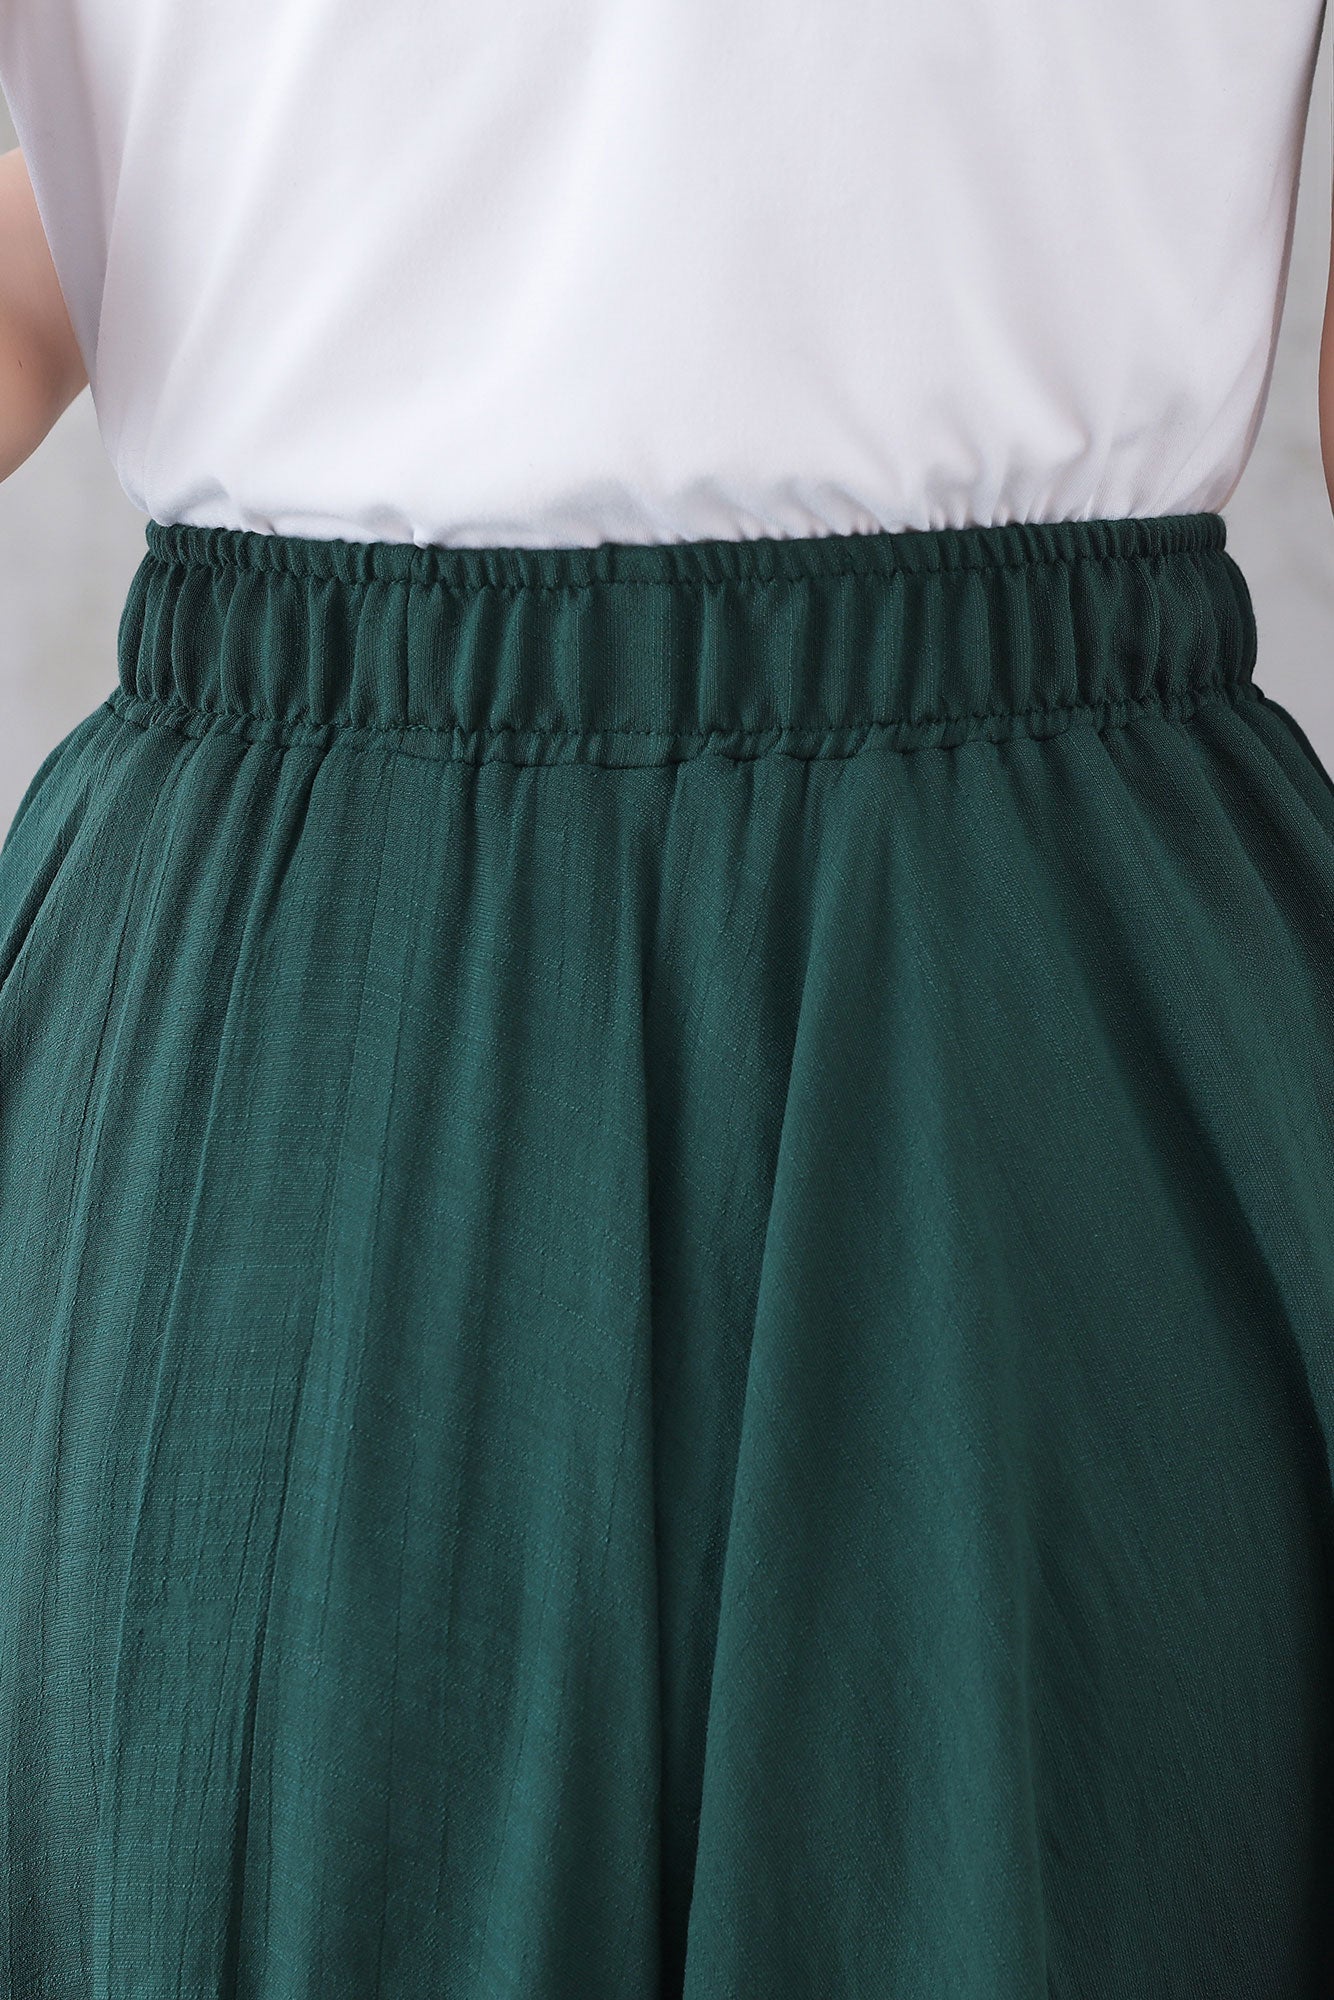 Women Summer Elastic Waist Green Linen Long Skirt 3296#CK2200332